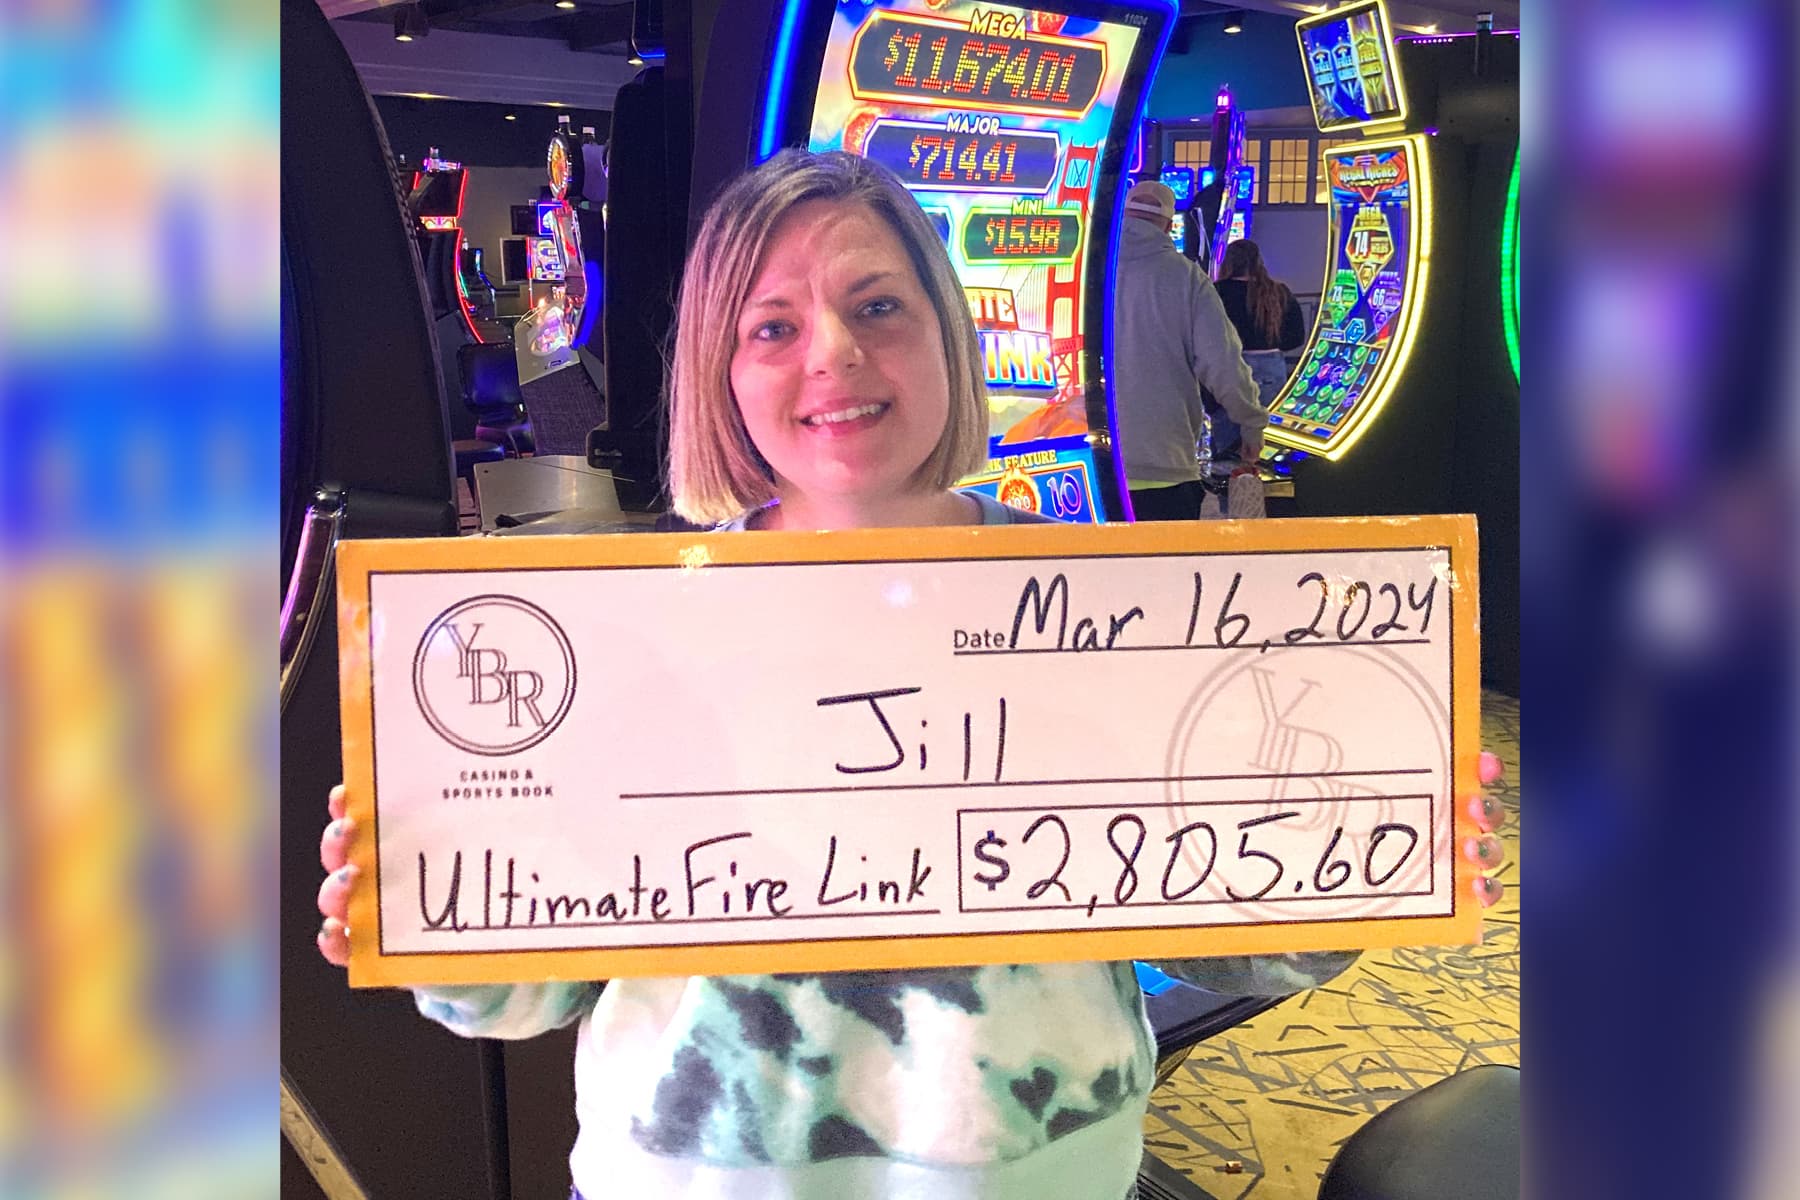 Jill won $2,805